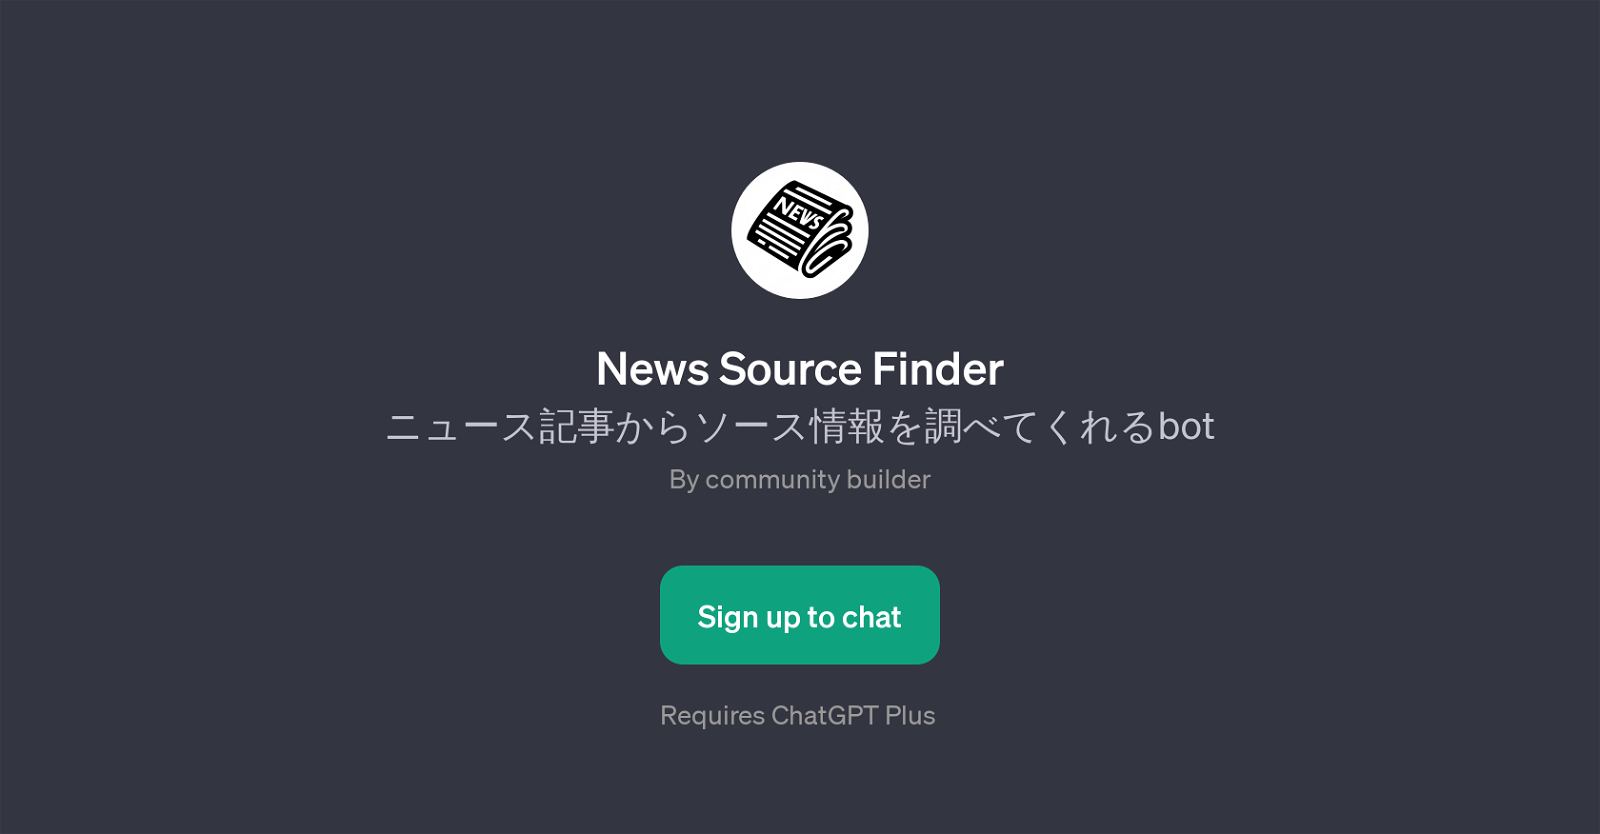 News Source Finder website